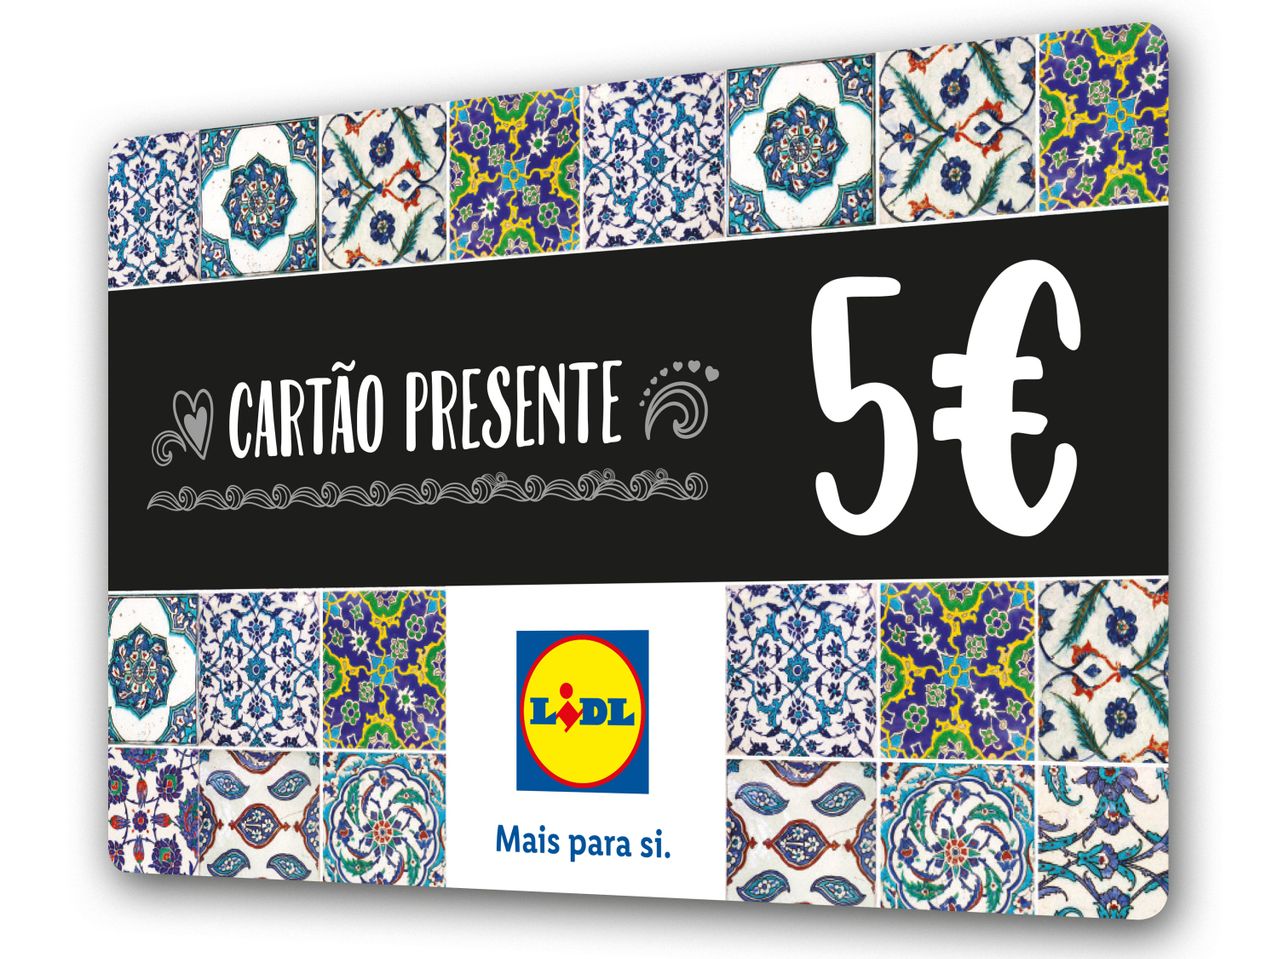 Ver empliada: Cartão Presente 5€ - Imagem 1